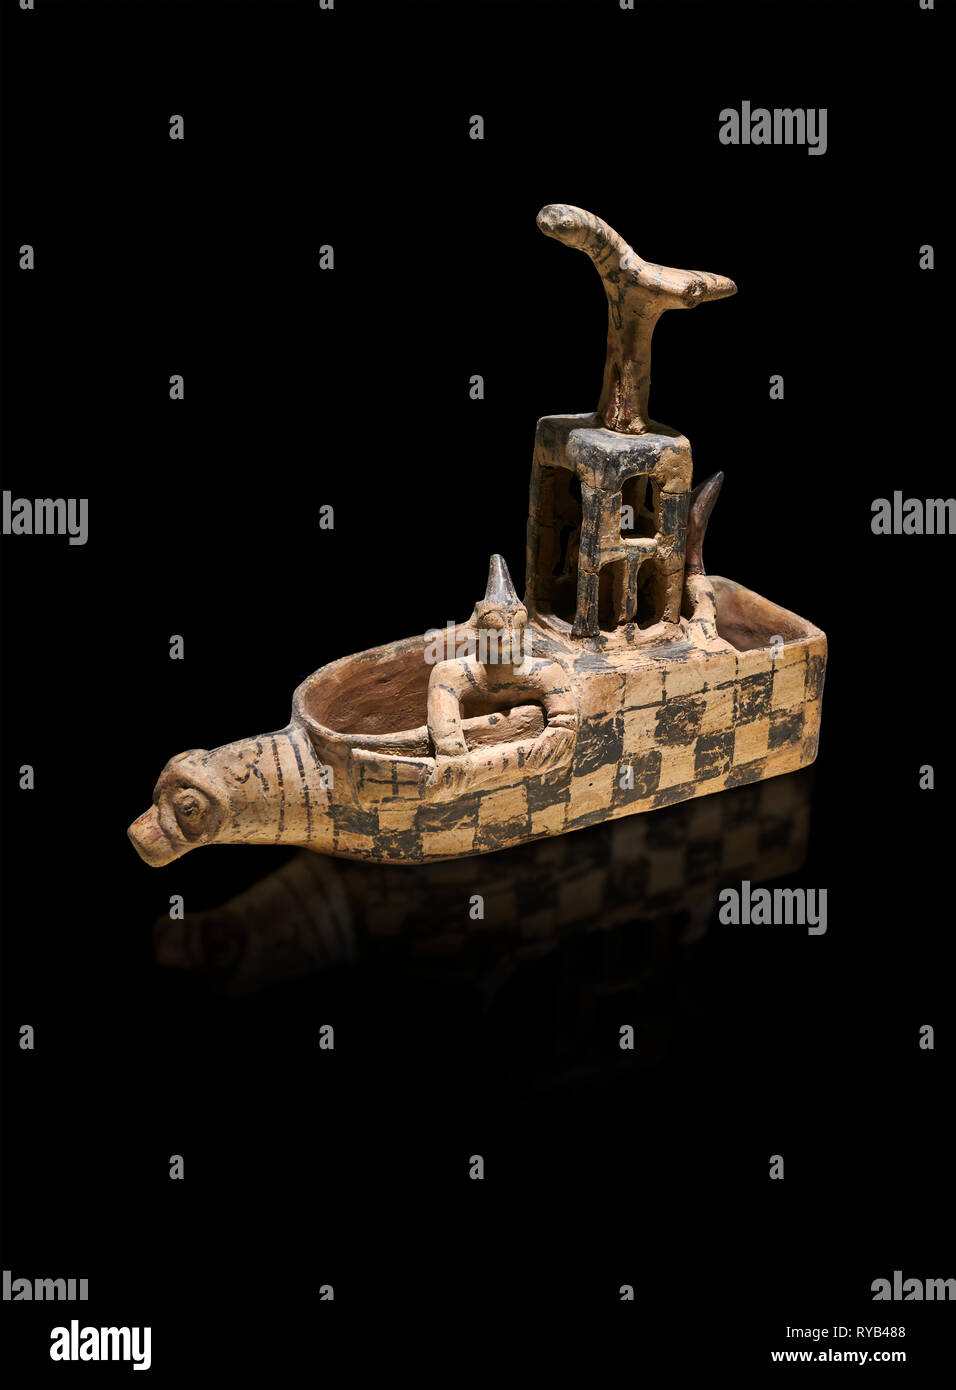 Colonie assyrienne de l'âge du Bronze de Trader en terre cuite en forme de sandale vessed rituel. Ce culte est pot en forme de bateau avec une tête d'animal à l'avant. L'intérieur de la ve Banque D'Images